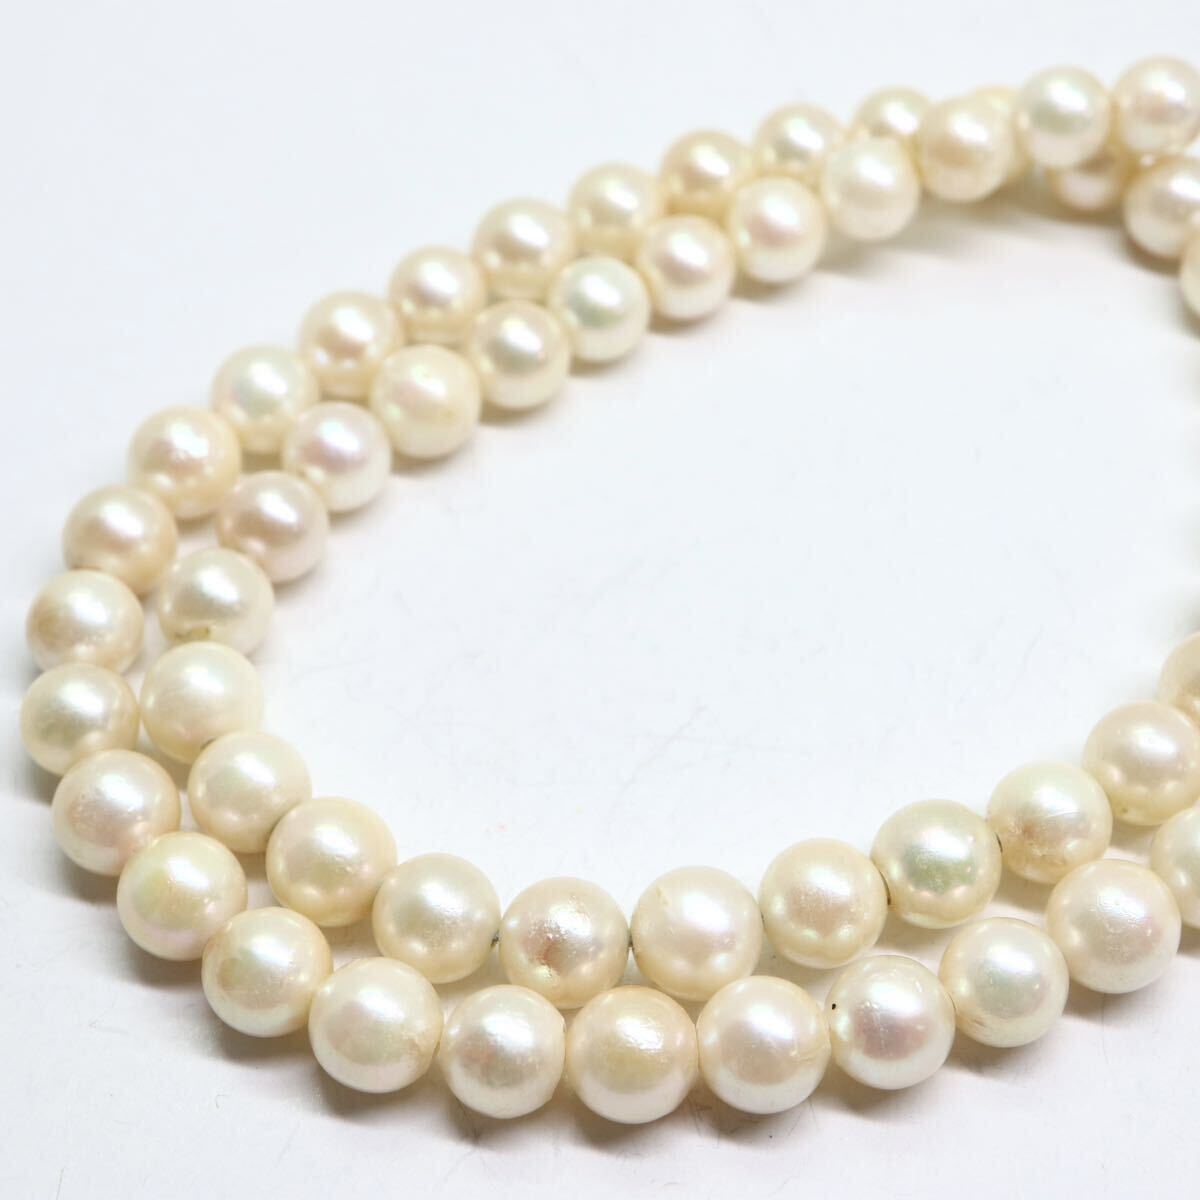 《アコヤ本真珠ネックレス》A 約6.5-7.0mm珠 28.5g 約41.5cm pearl necklace ジュエリー jewelry DA0/DA0の画像4